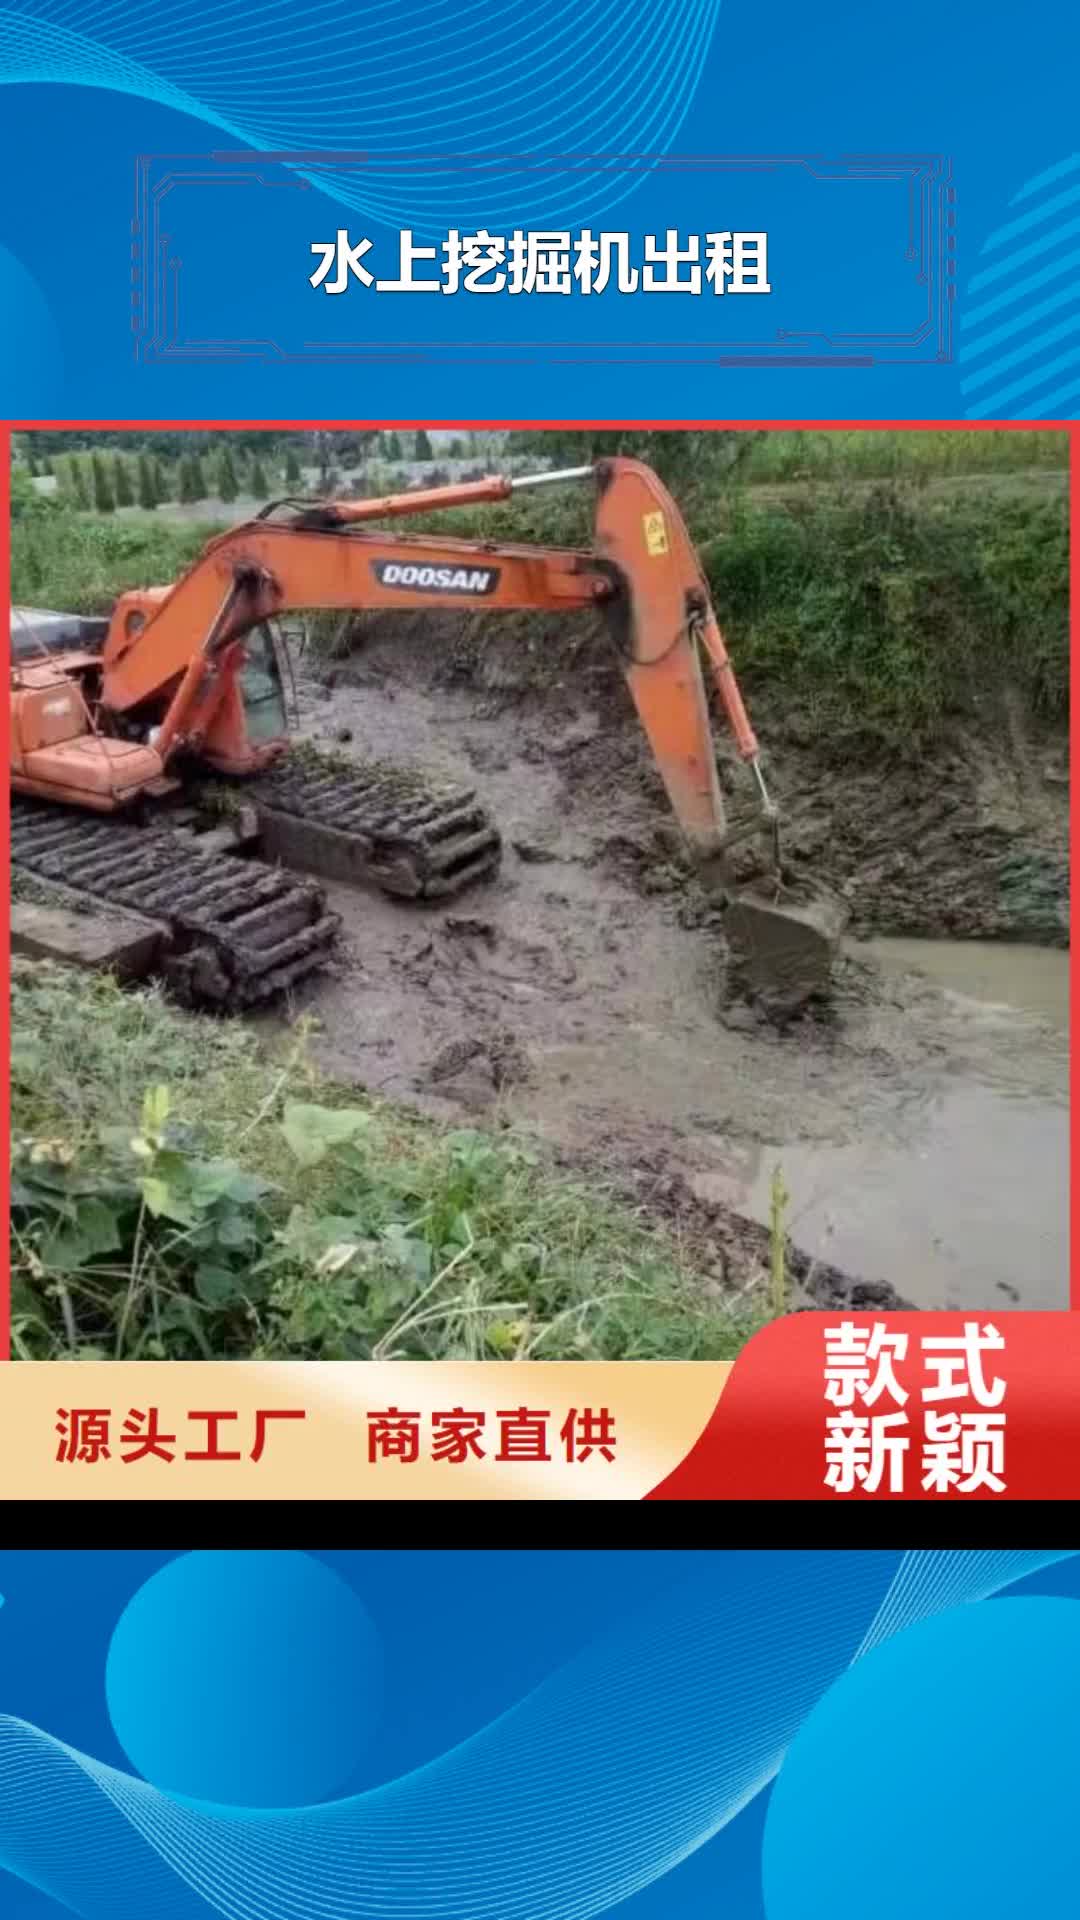 漳州 水上挖掘机出租,【水上挖机租赁】销售的是诚信